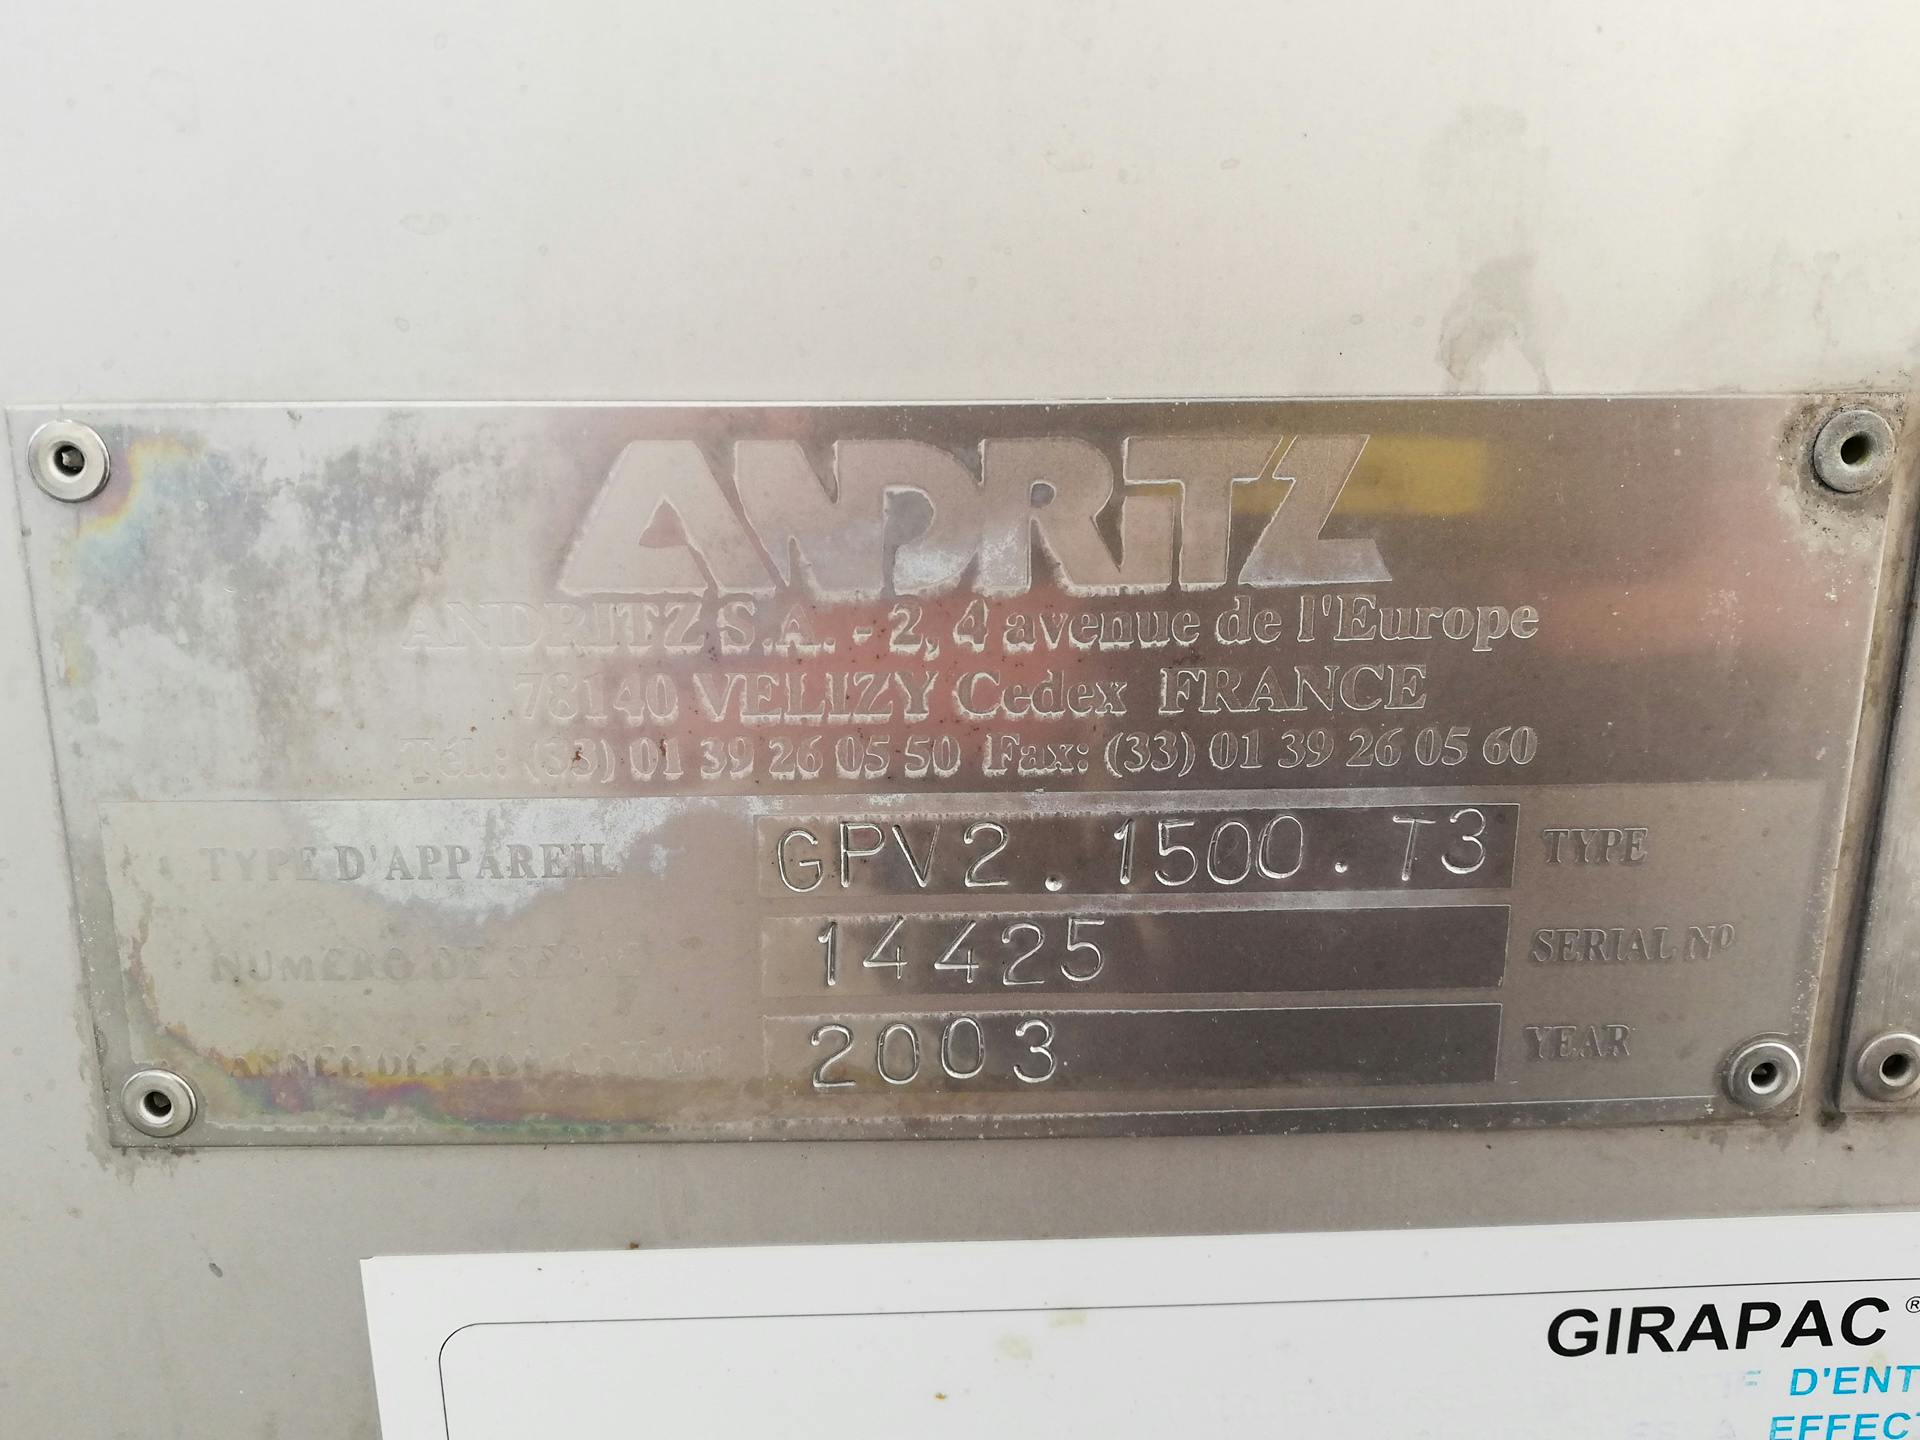 Andritz Girapac GPV2 1500 T3 - Peneira rotativa - image 4